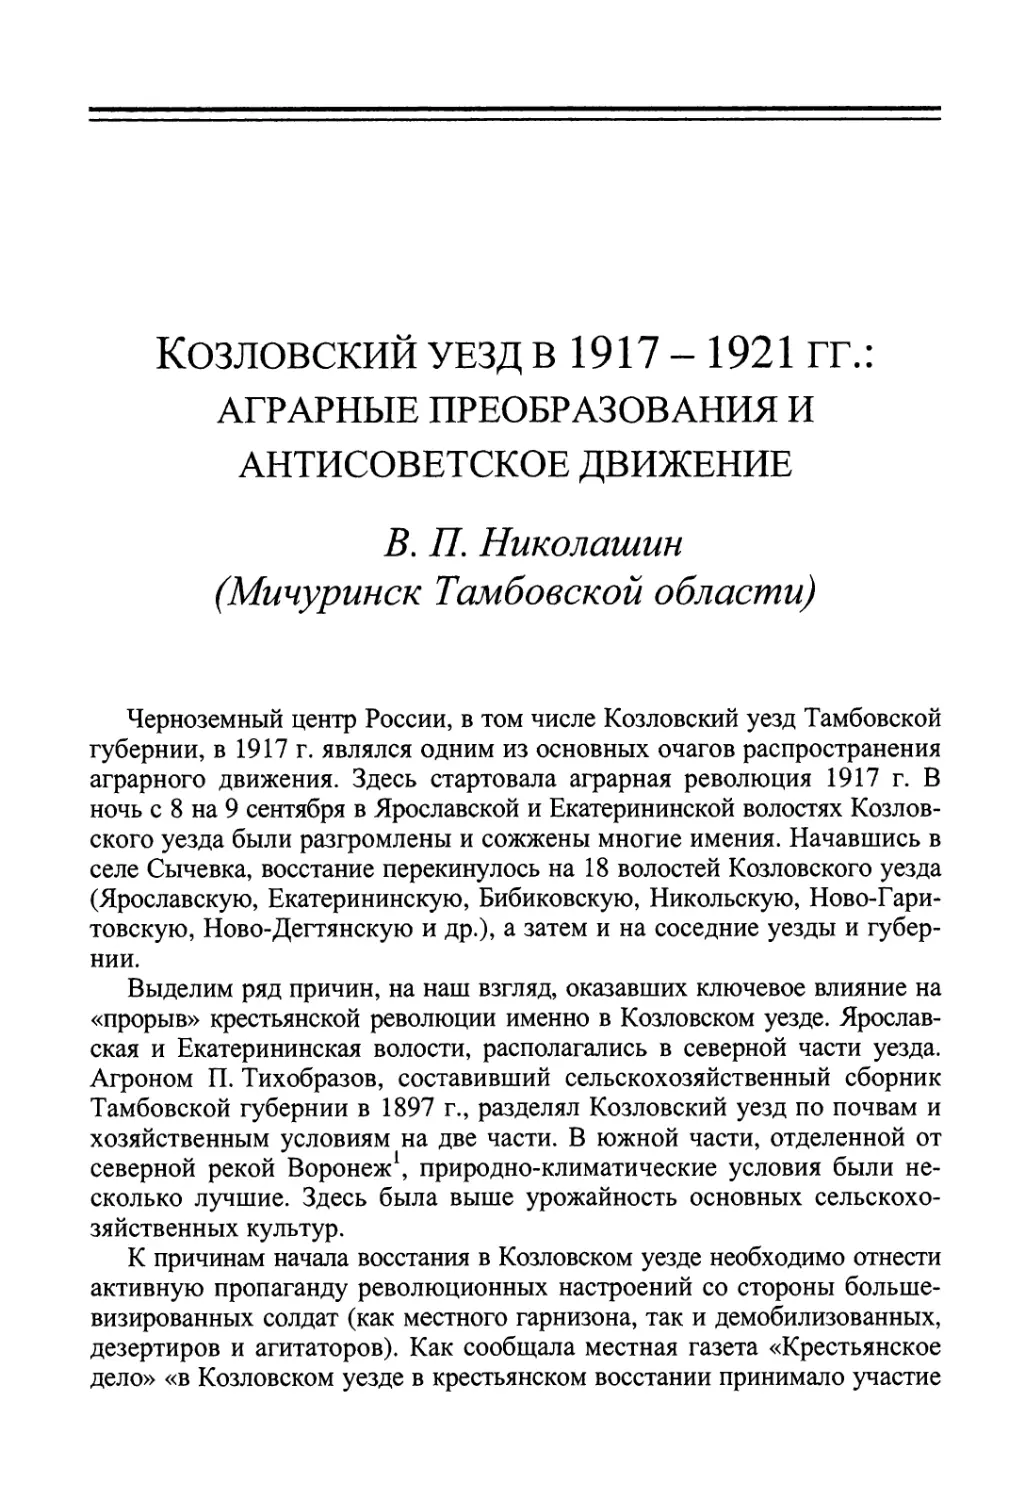 Николашин В.П. Козловский уезд в 1917–1921 гг.: аграрные преобразования и антисоветское движение